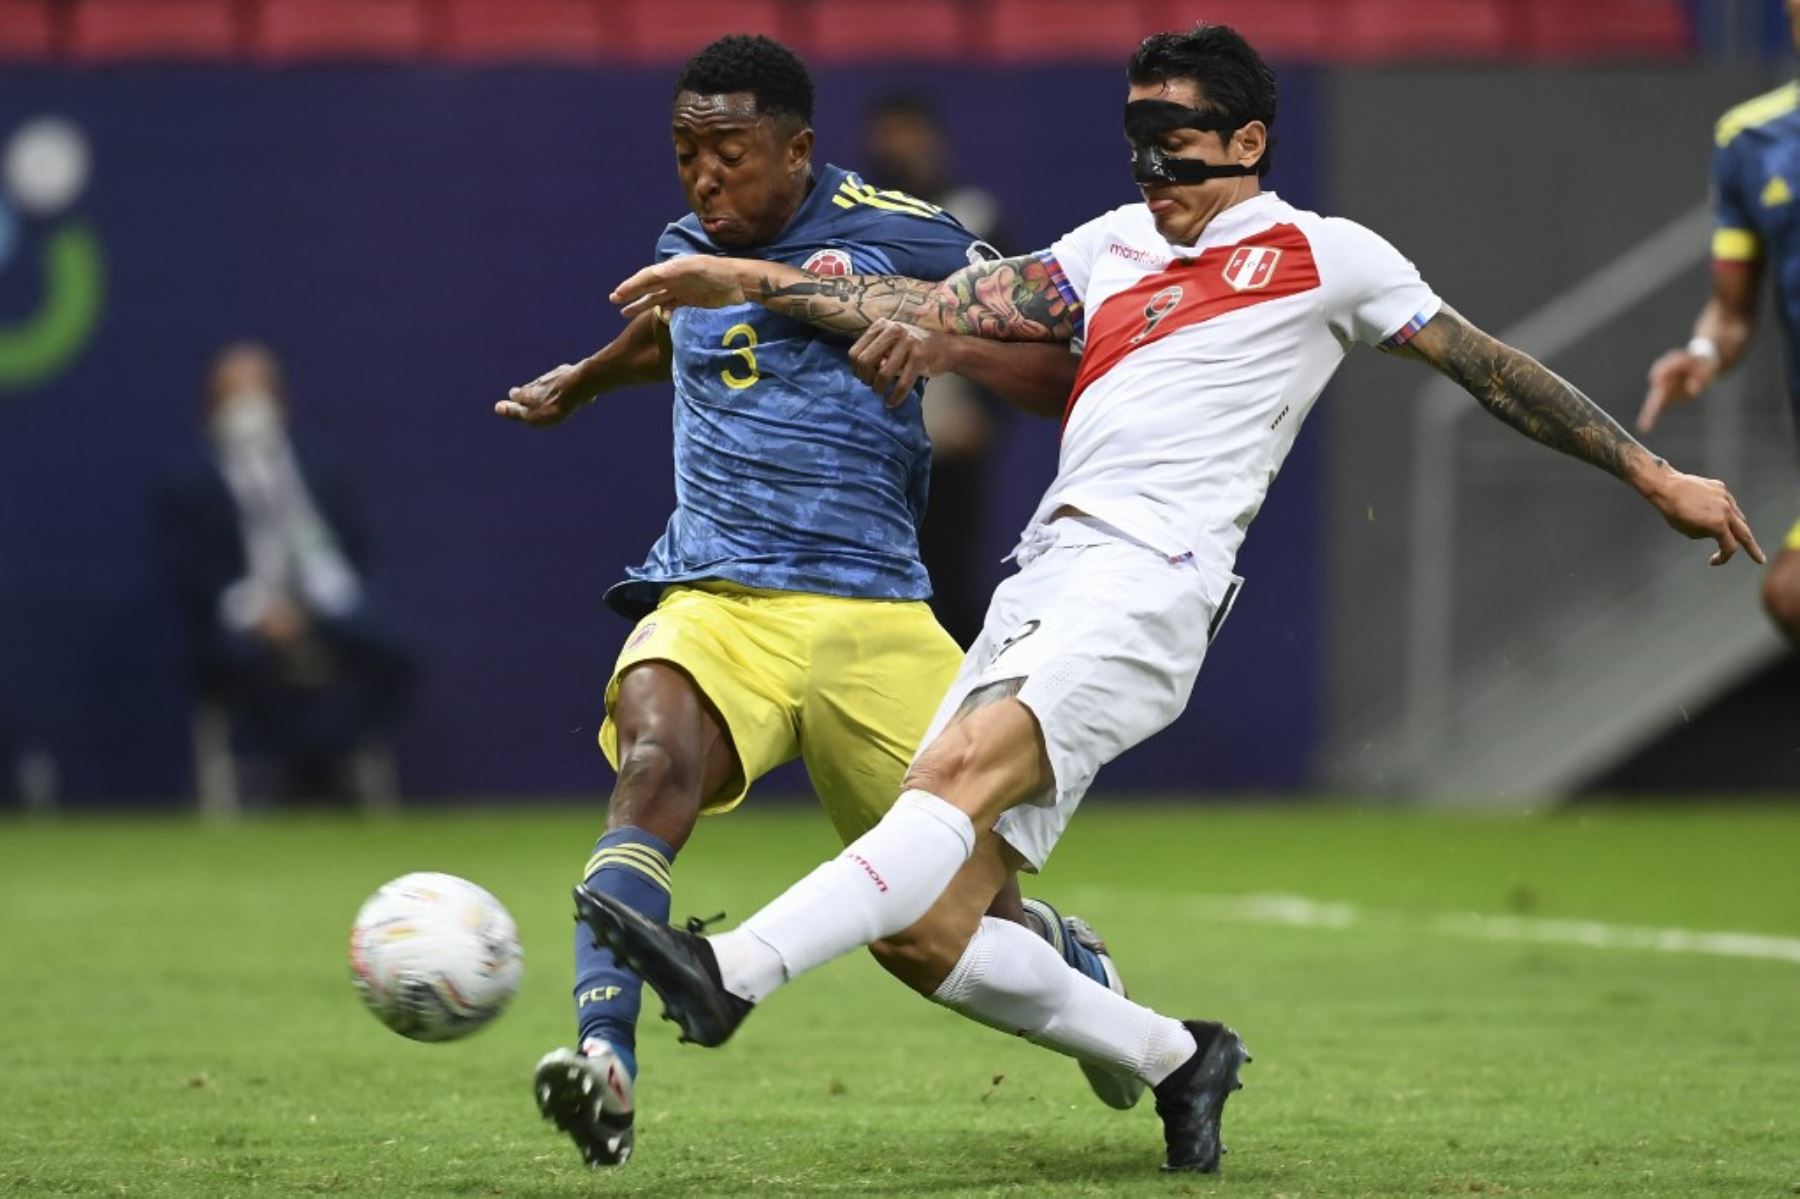 El Perú-Colombia será uno de los partidos más atractivos de la jornada 15 de eliminatorias.